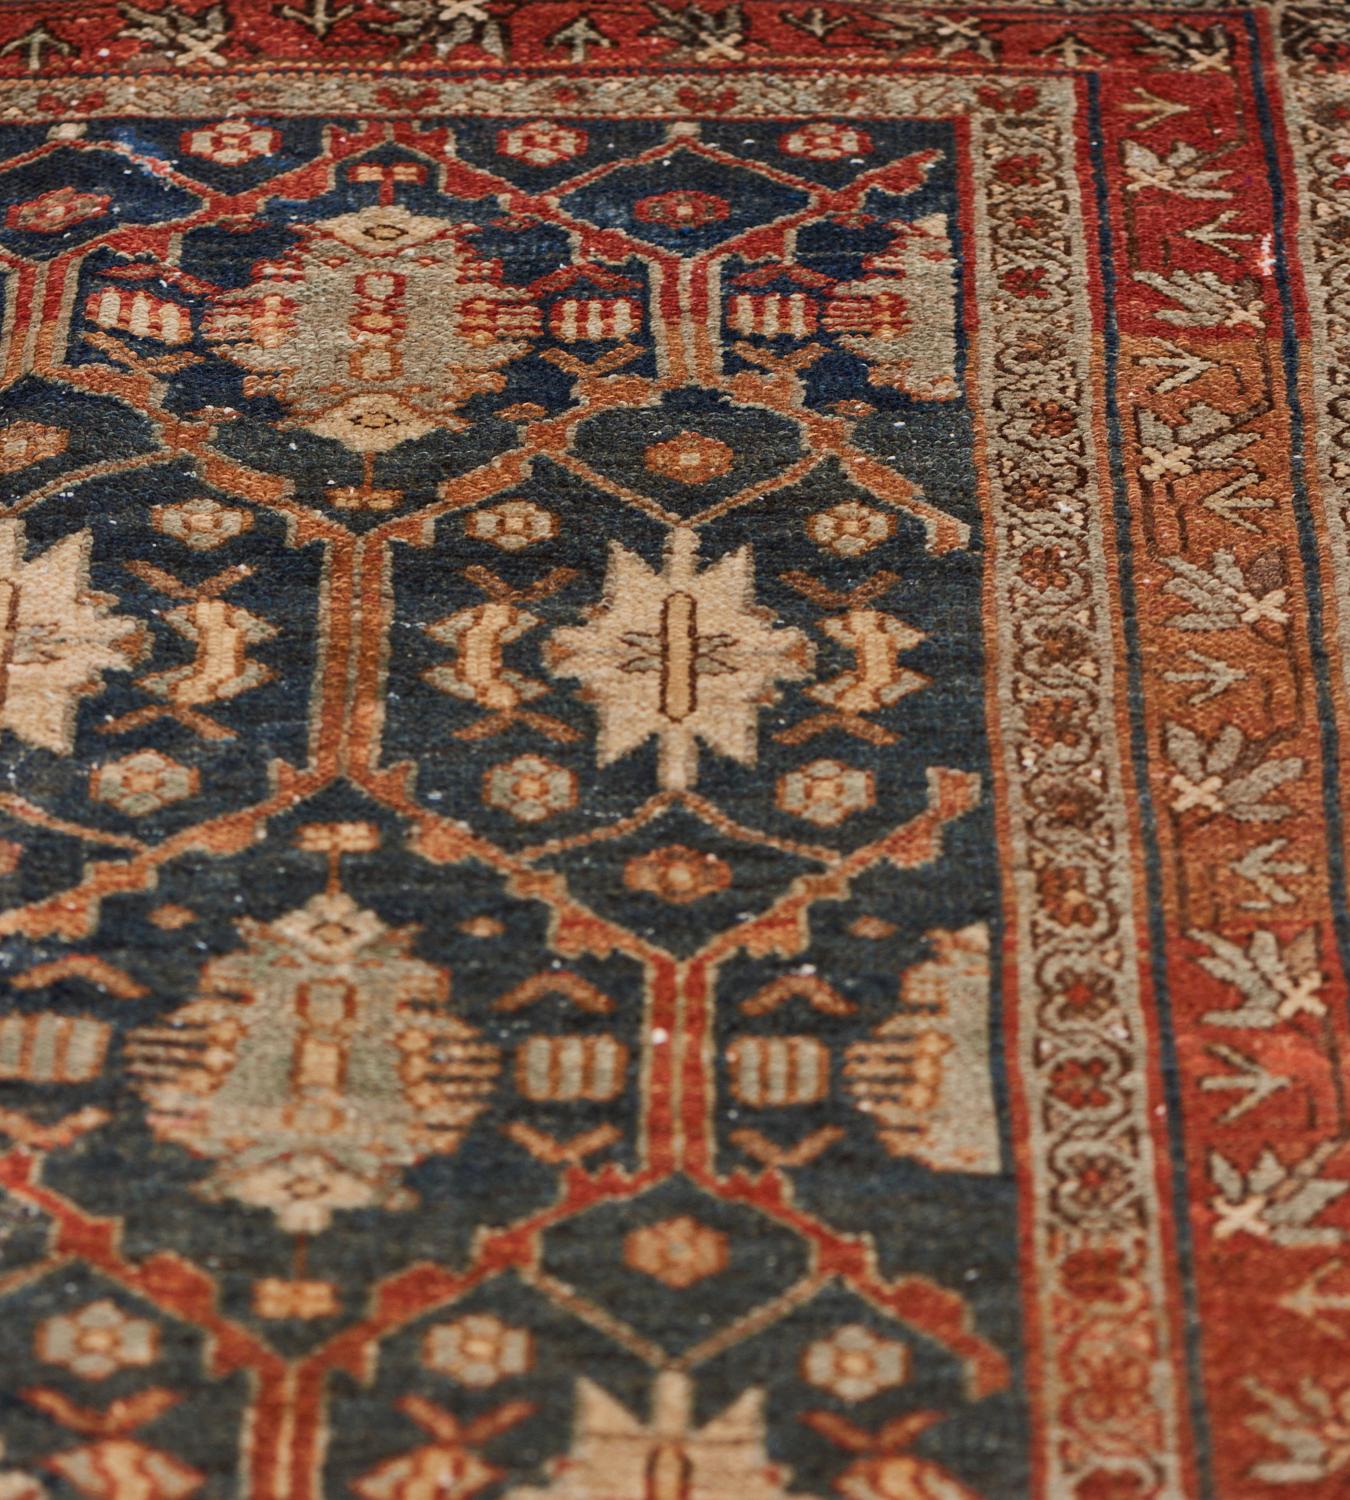 Ce tapis persan traditionnel Malayer, tissé à la main, présente un champ marine foncé avec un motif général de treillis à losanges en escalier entourant des médaillons liés, dans une bande rouille avec une bordure florale polychrome entre des bandes